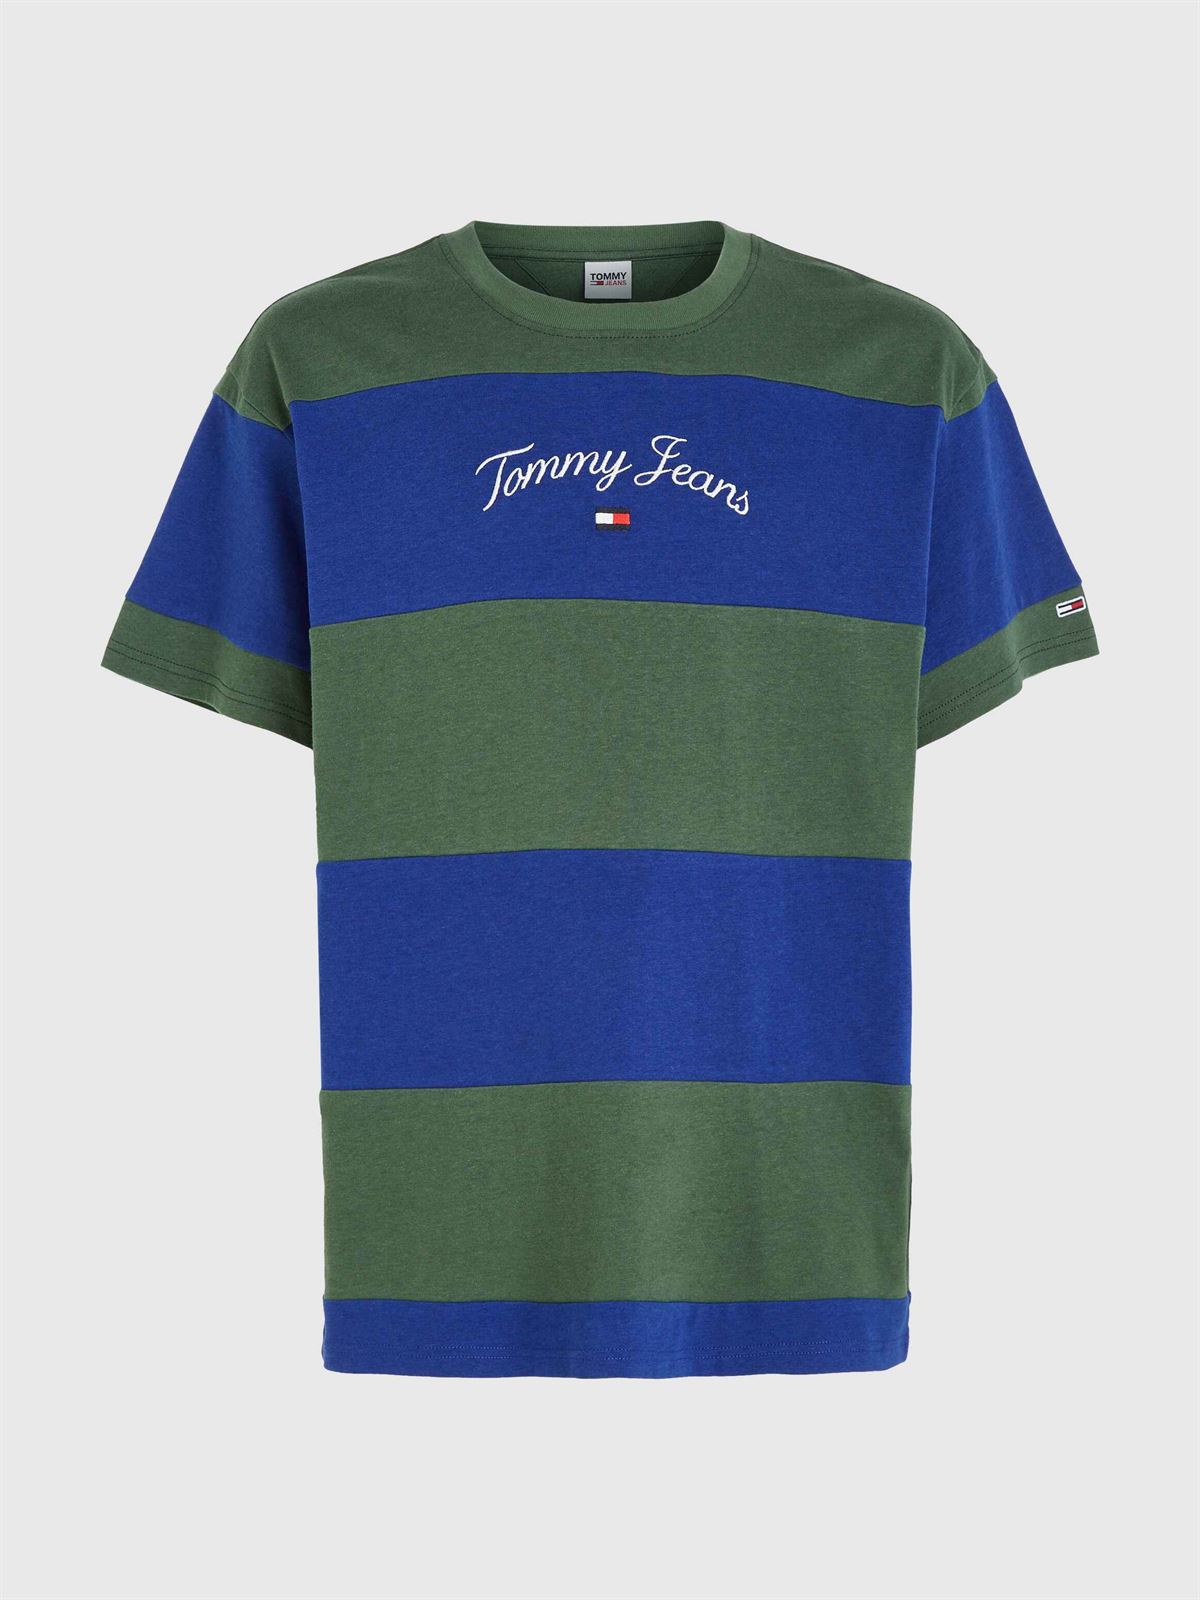 Camiseta TOMMY JEANS DM0DM16836 C9B navy voyage/multi - Imagen 4